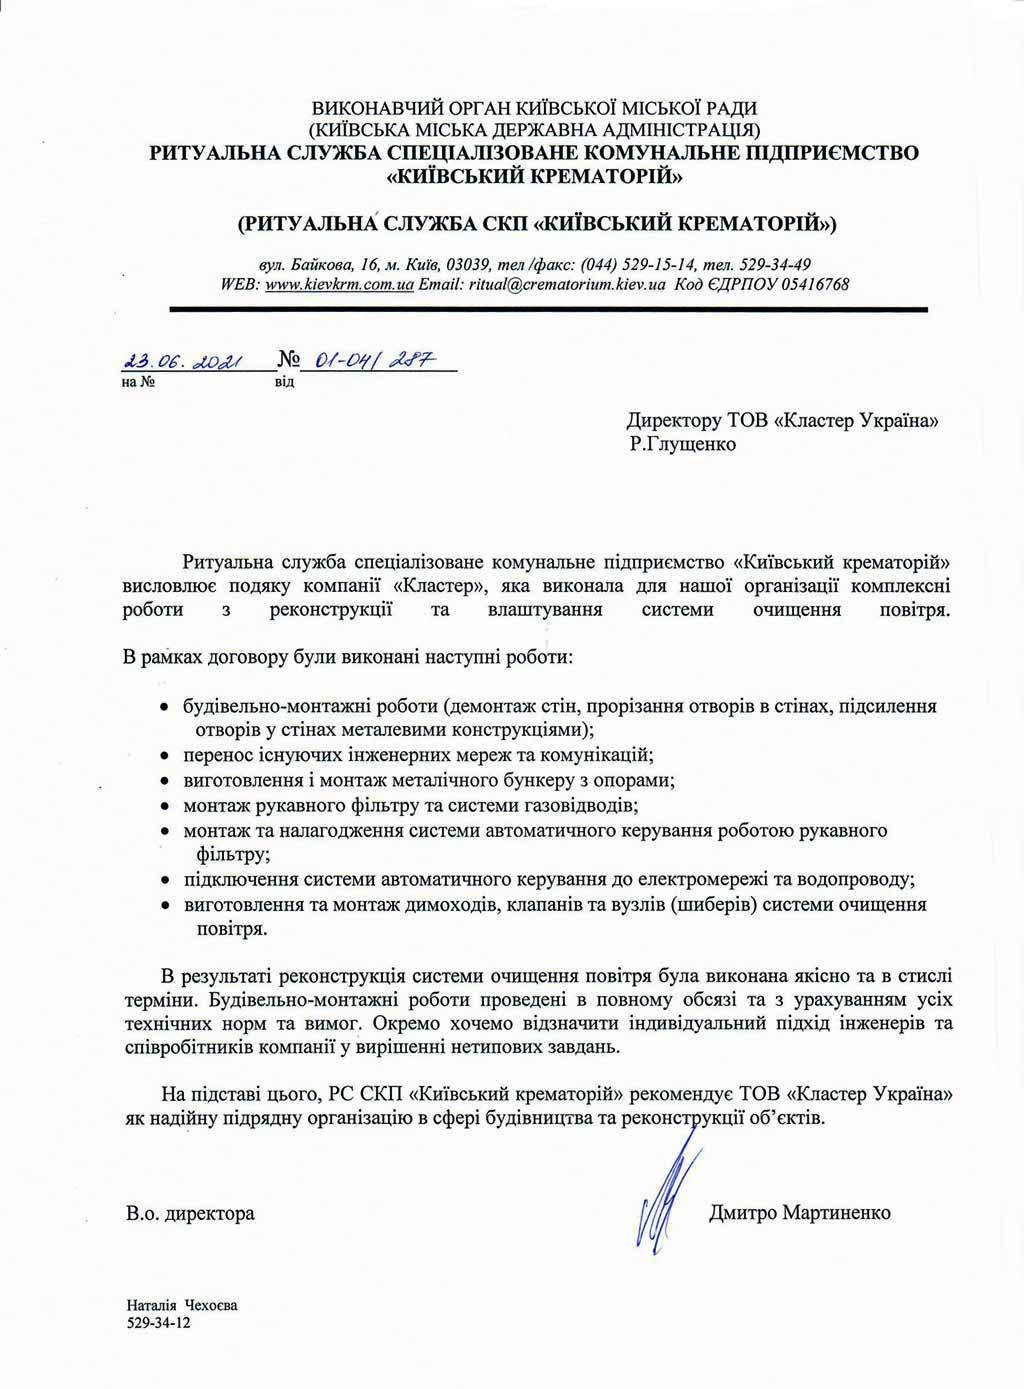 Рекомендаційний лист від Ритуальної служби спеціалізованого комунального підприємства «Київський крематорій»